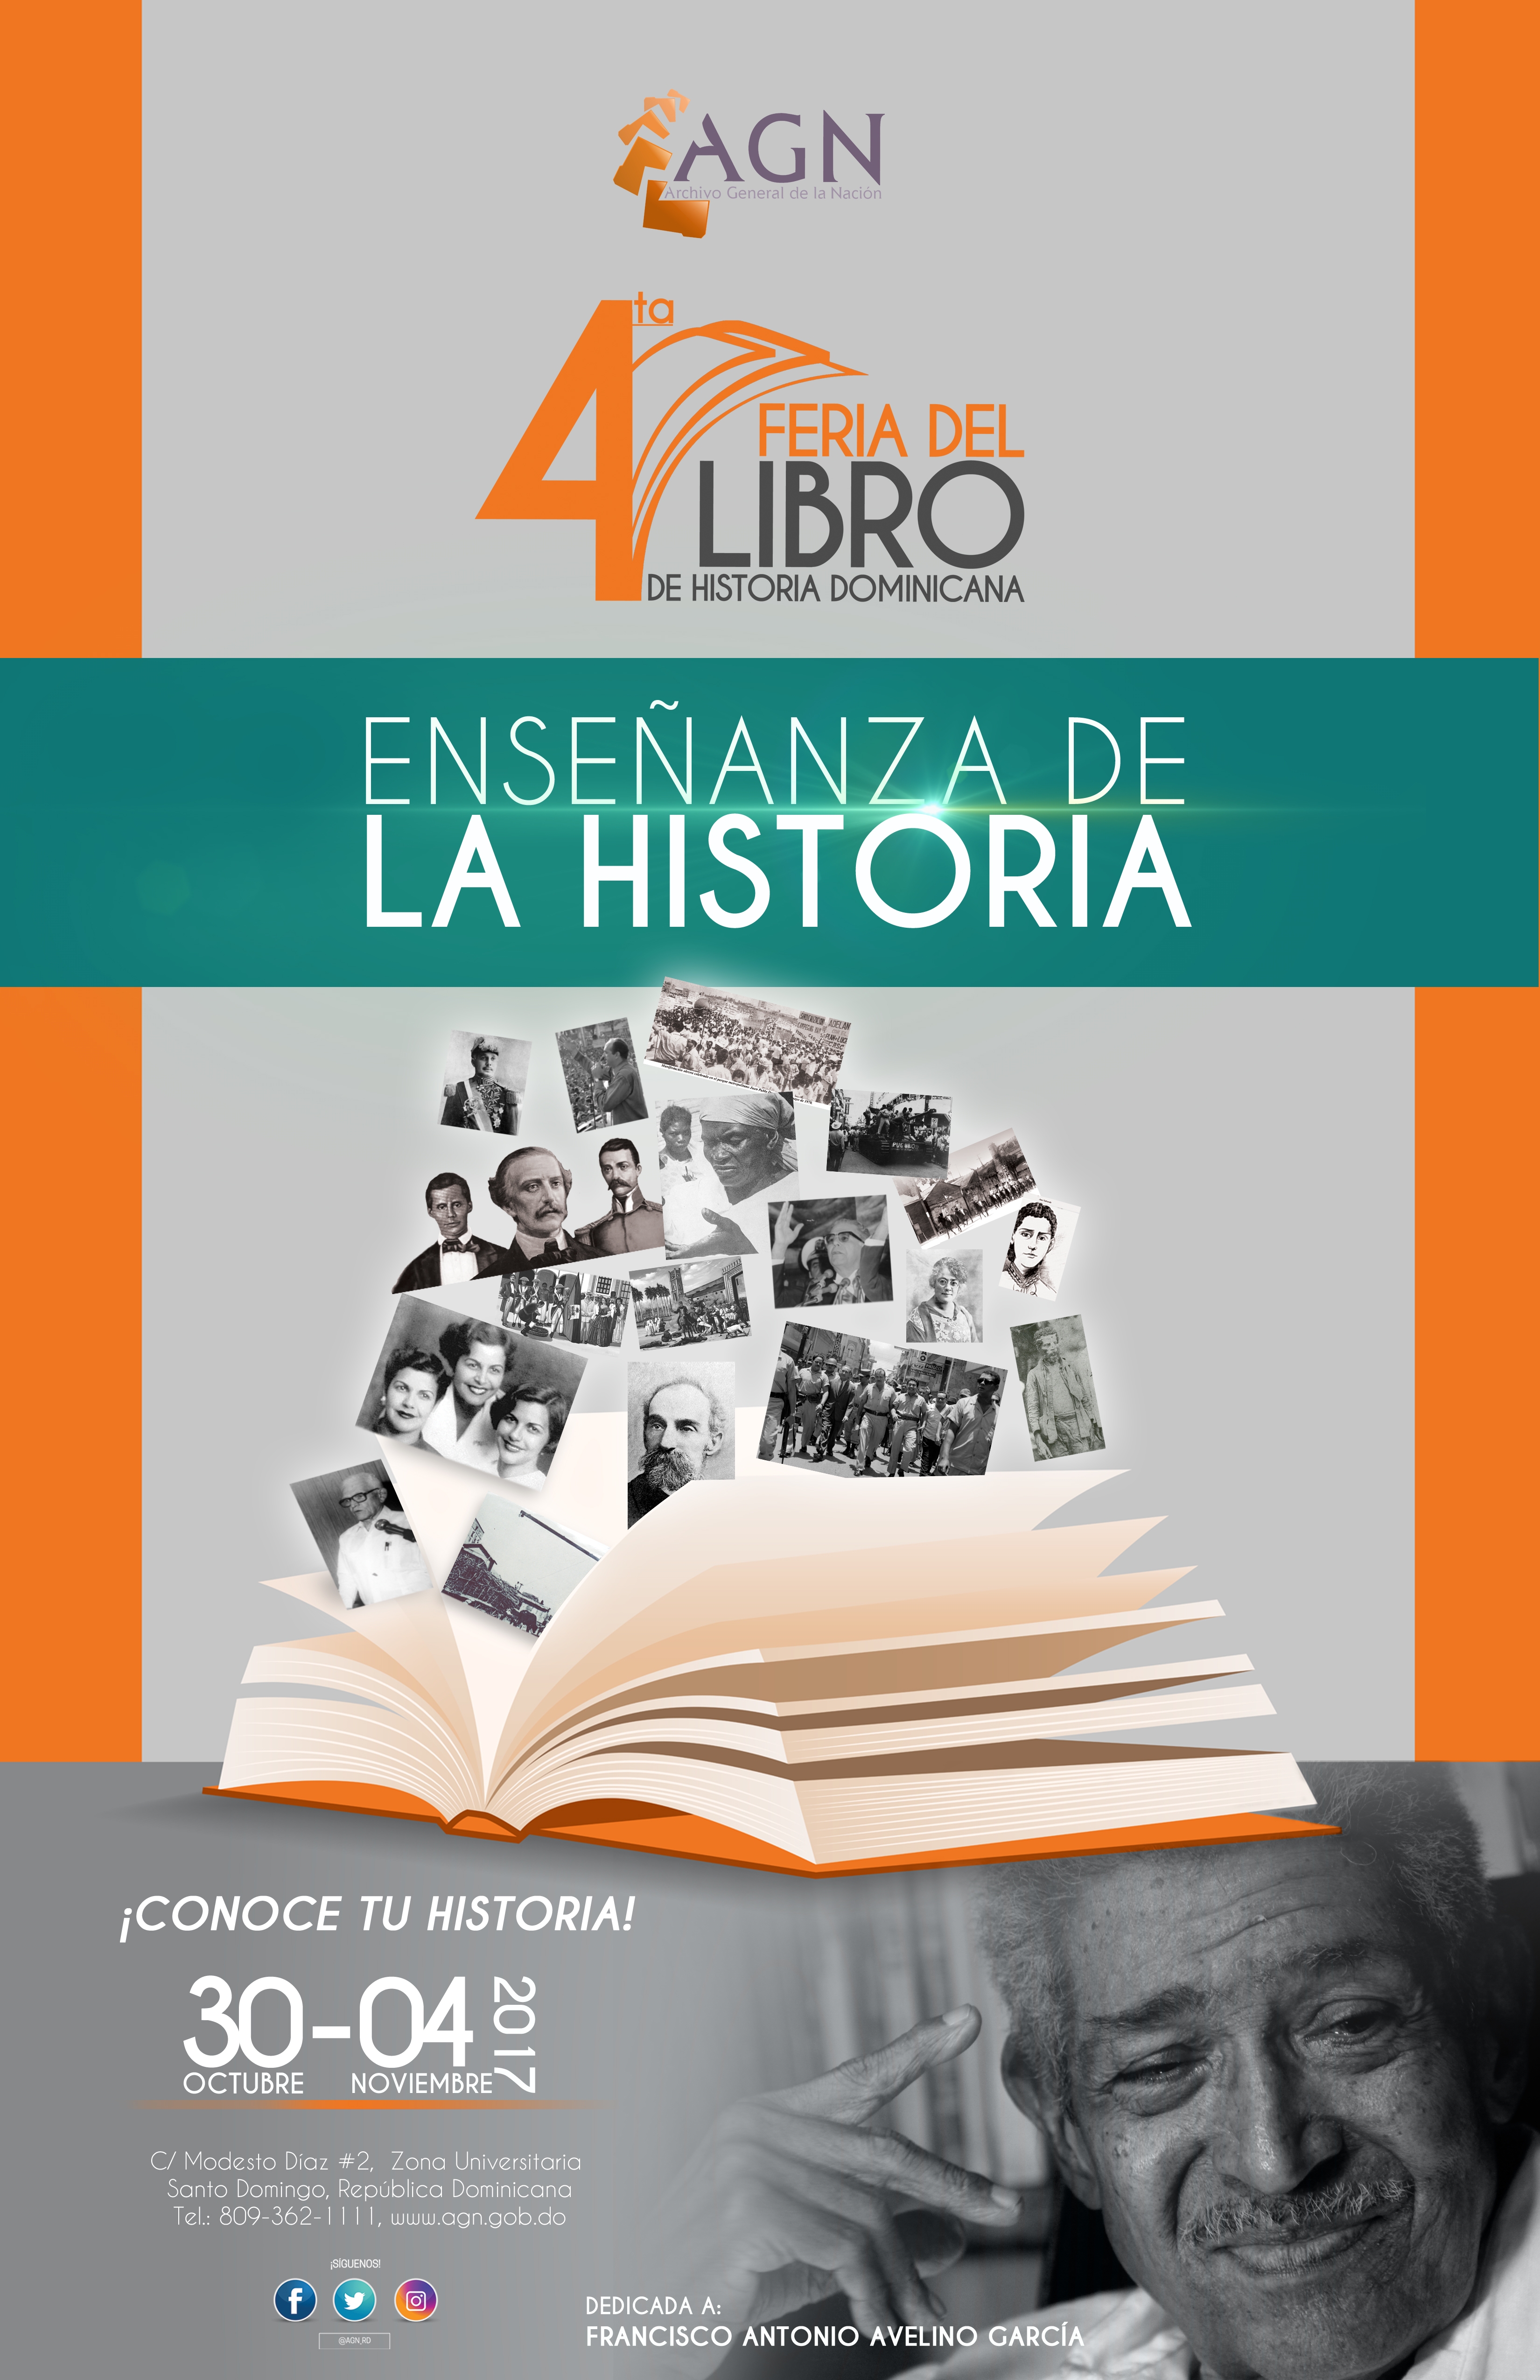  AGN pondrá en circulación 15 libros en la 4ta Feria del Libro de Historia Dominicana